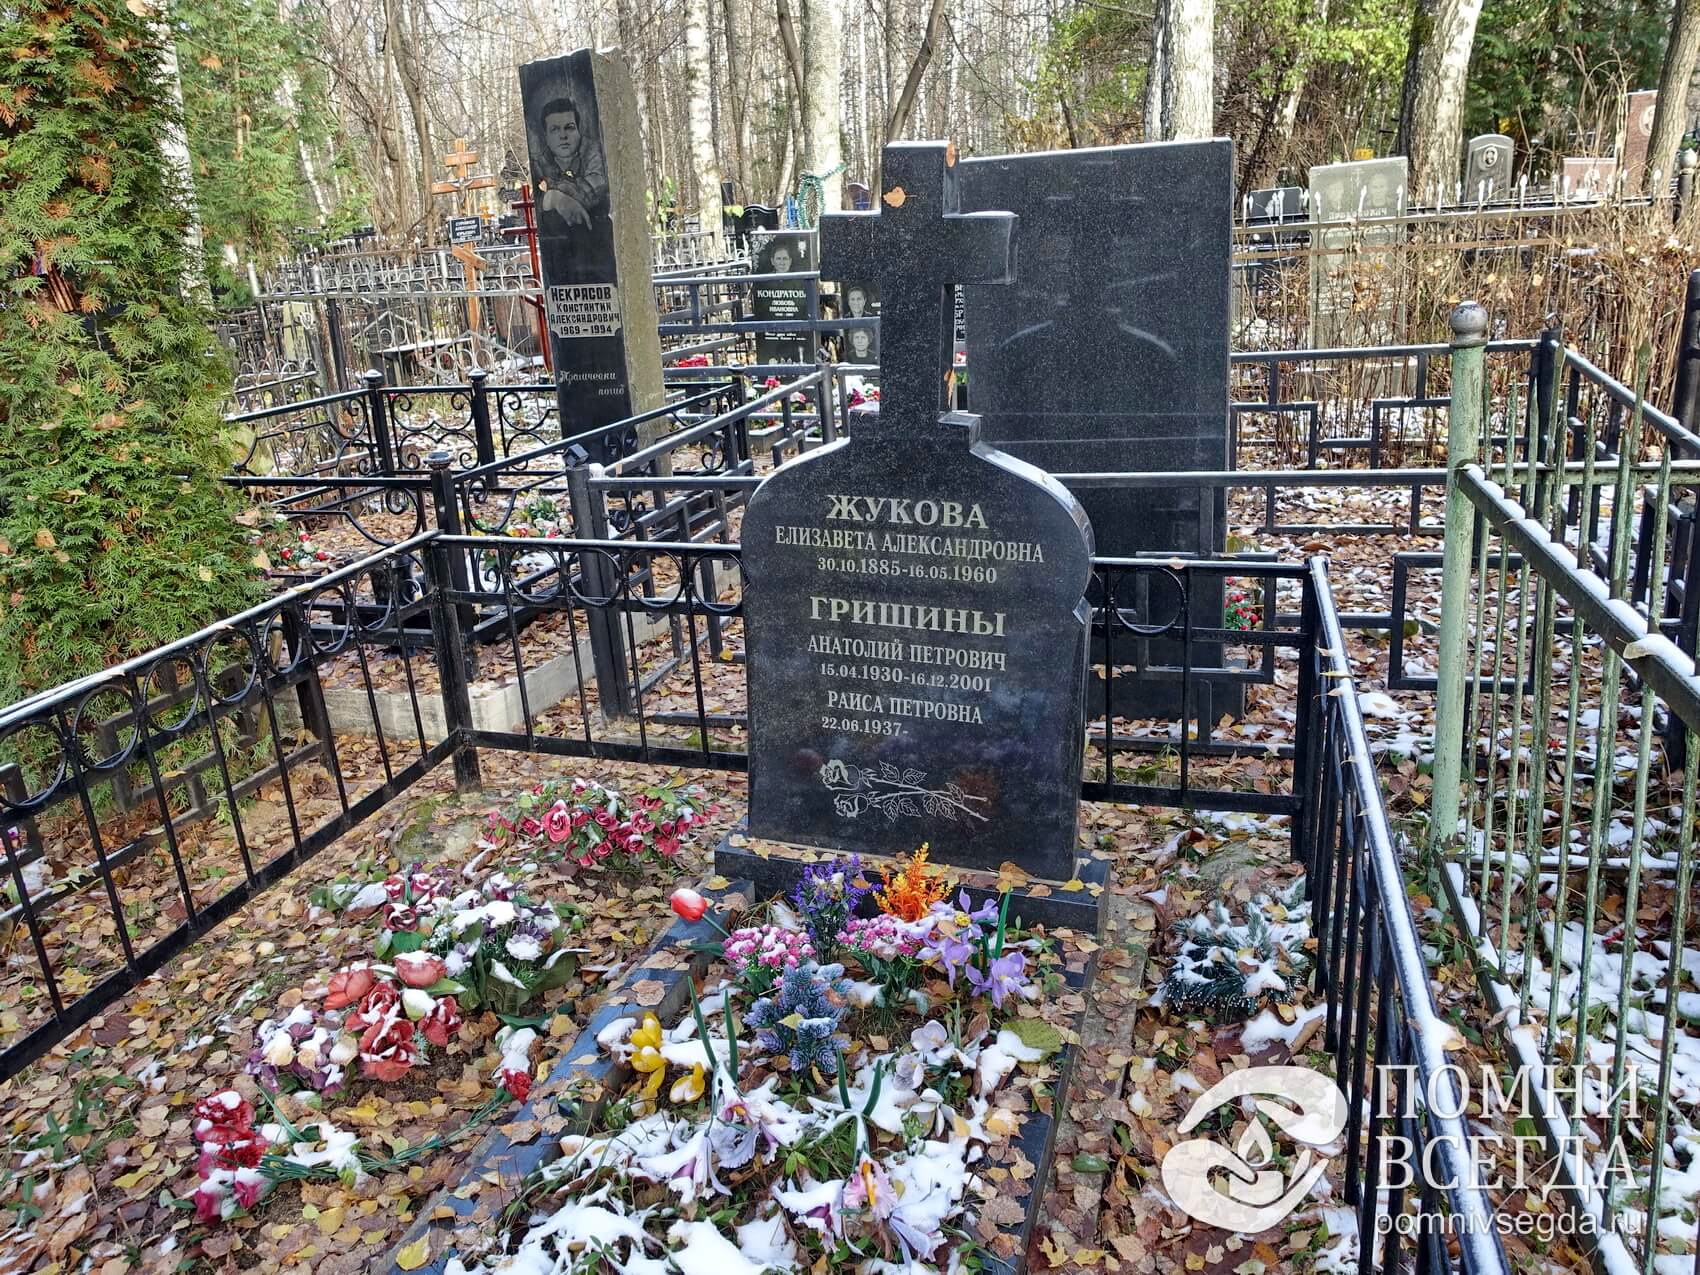 Невысокий памятник в православном стиле на трёх покойных